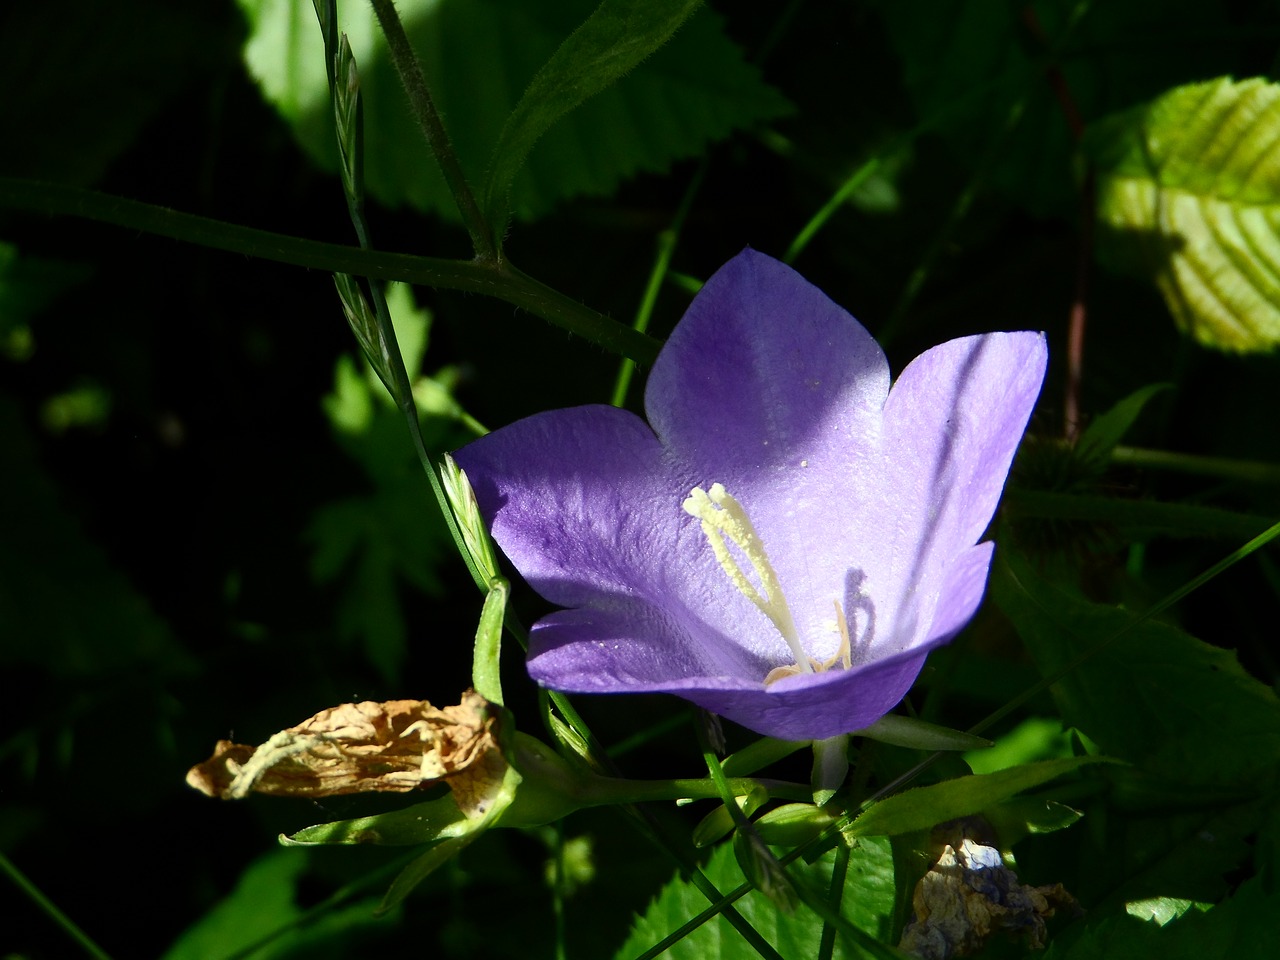 Image - bellflower pfirsichblättrig purple